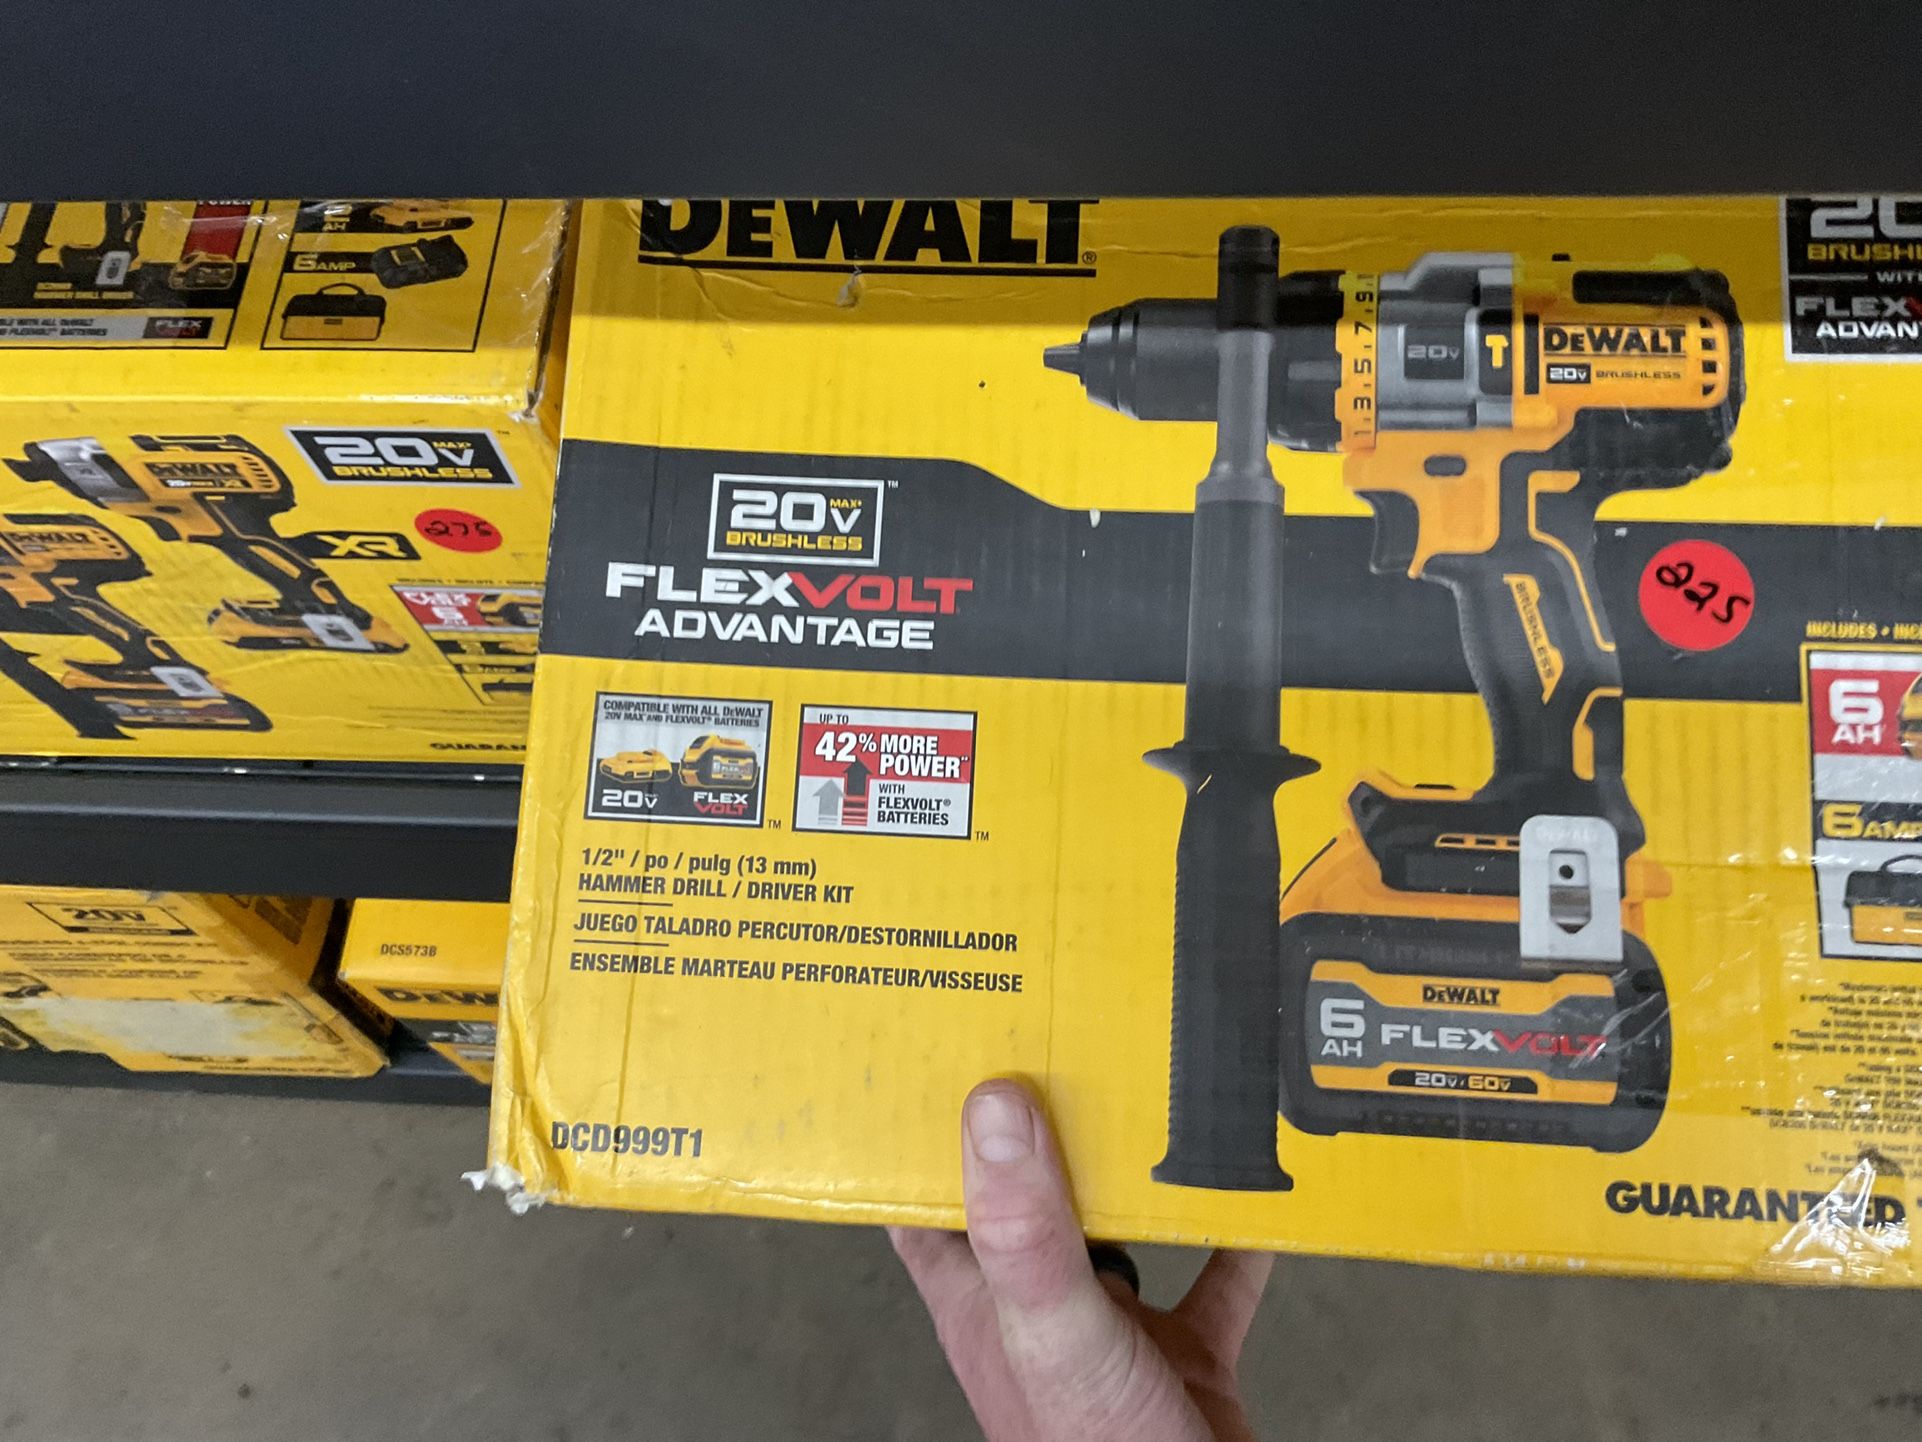 Dewalt 1/2” Hammer Drill Driver Kit